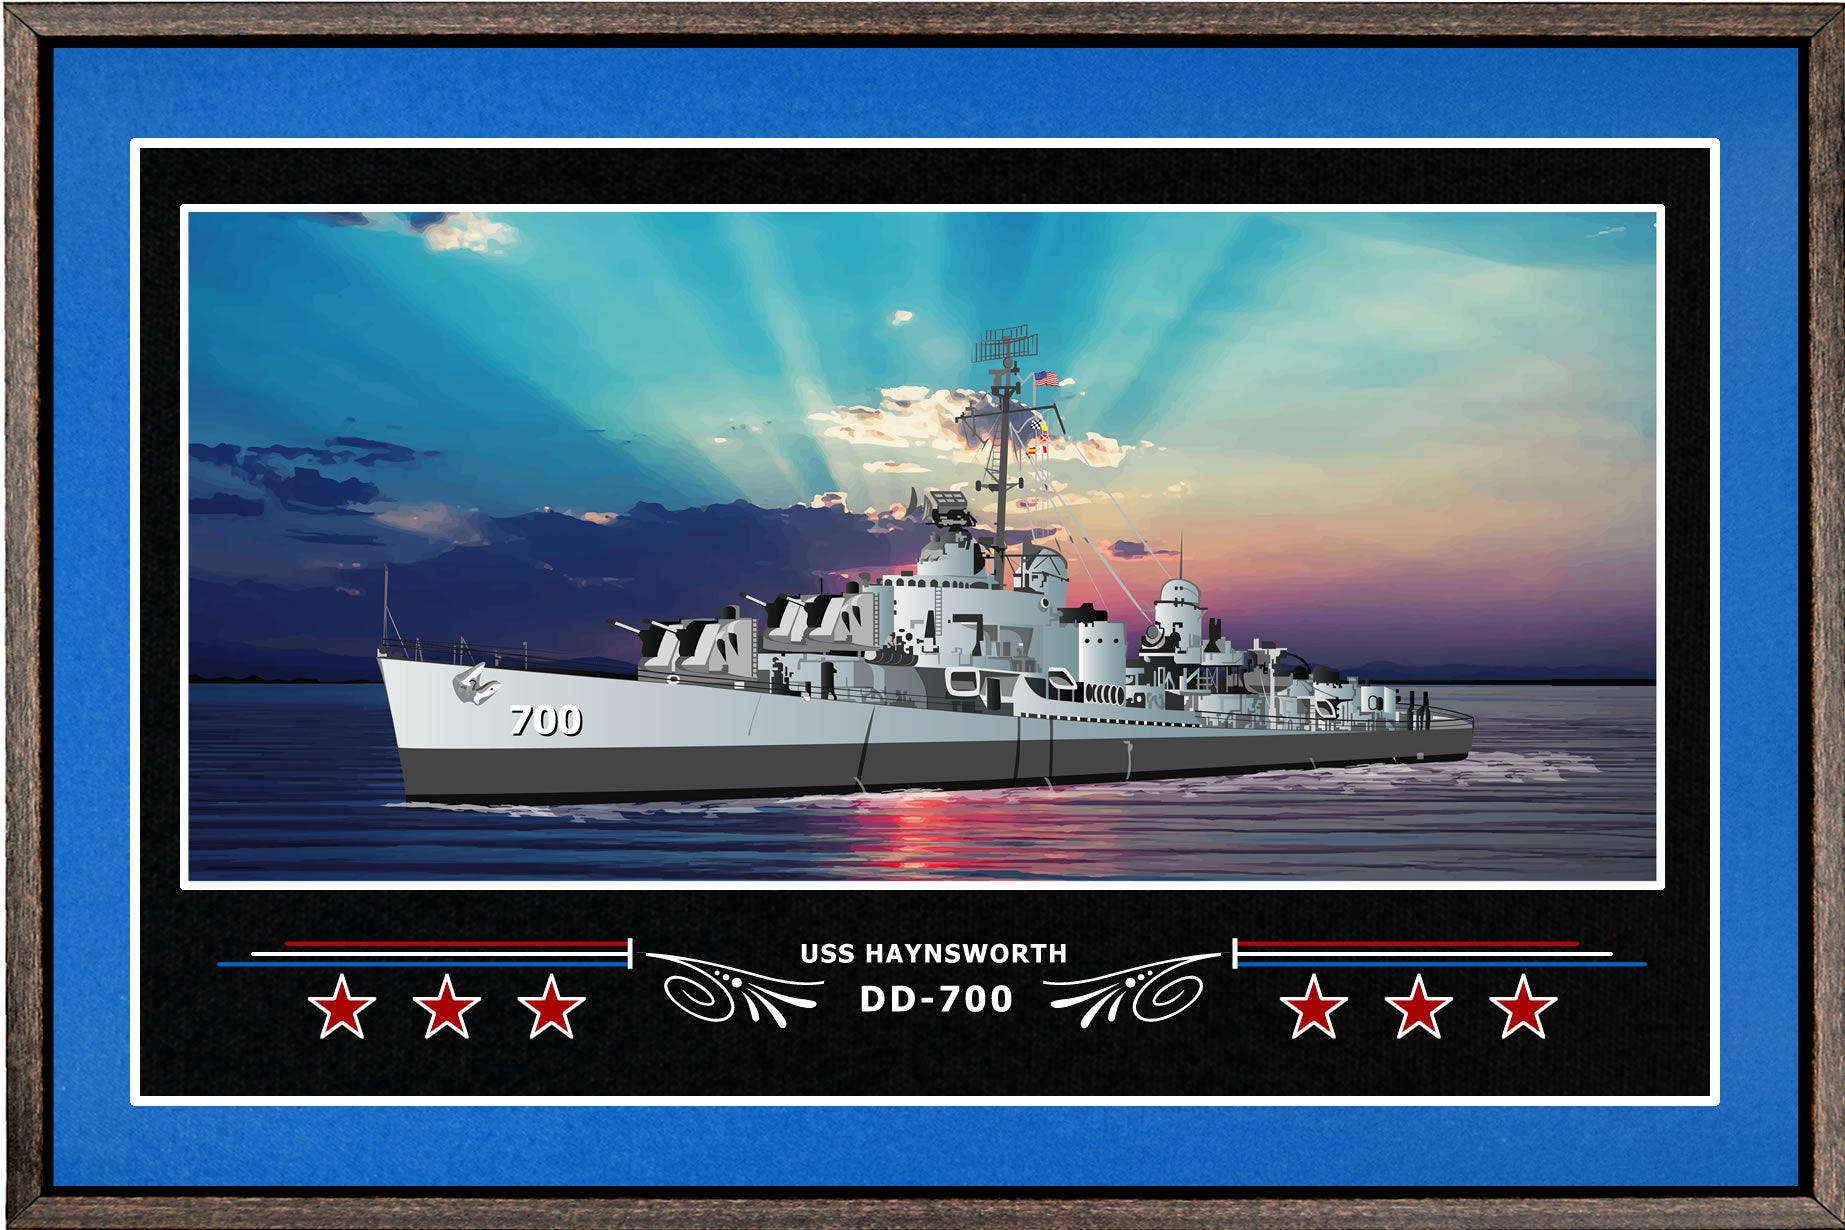 USS HAYNSWORTH DD 700 BOX FRAMED CANVAS ART BLUE